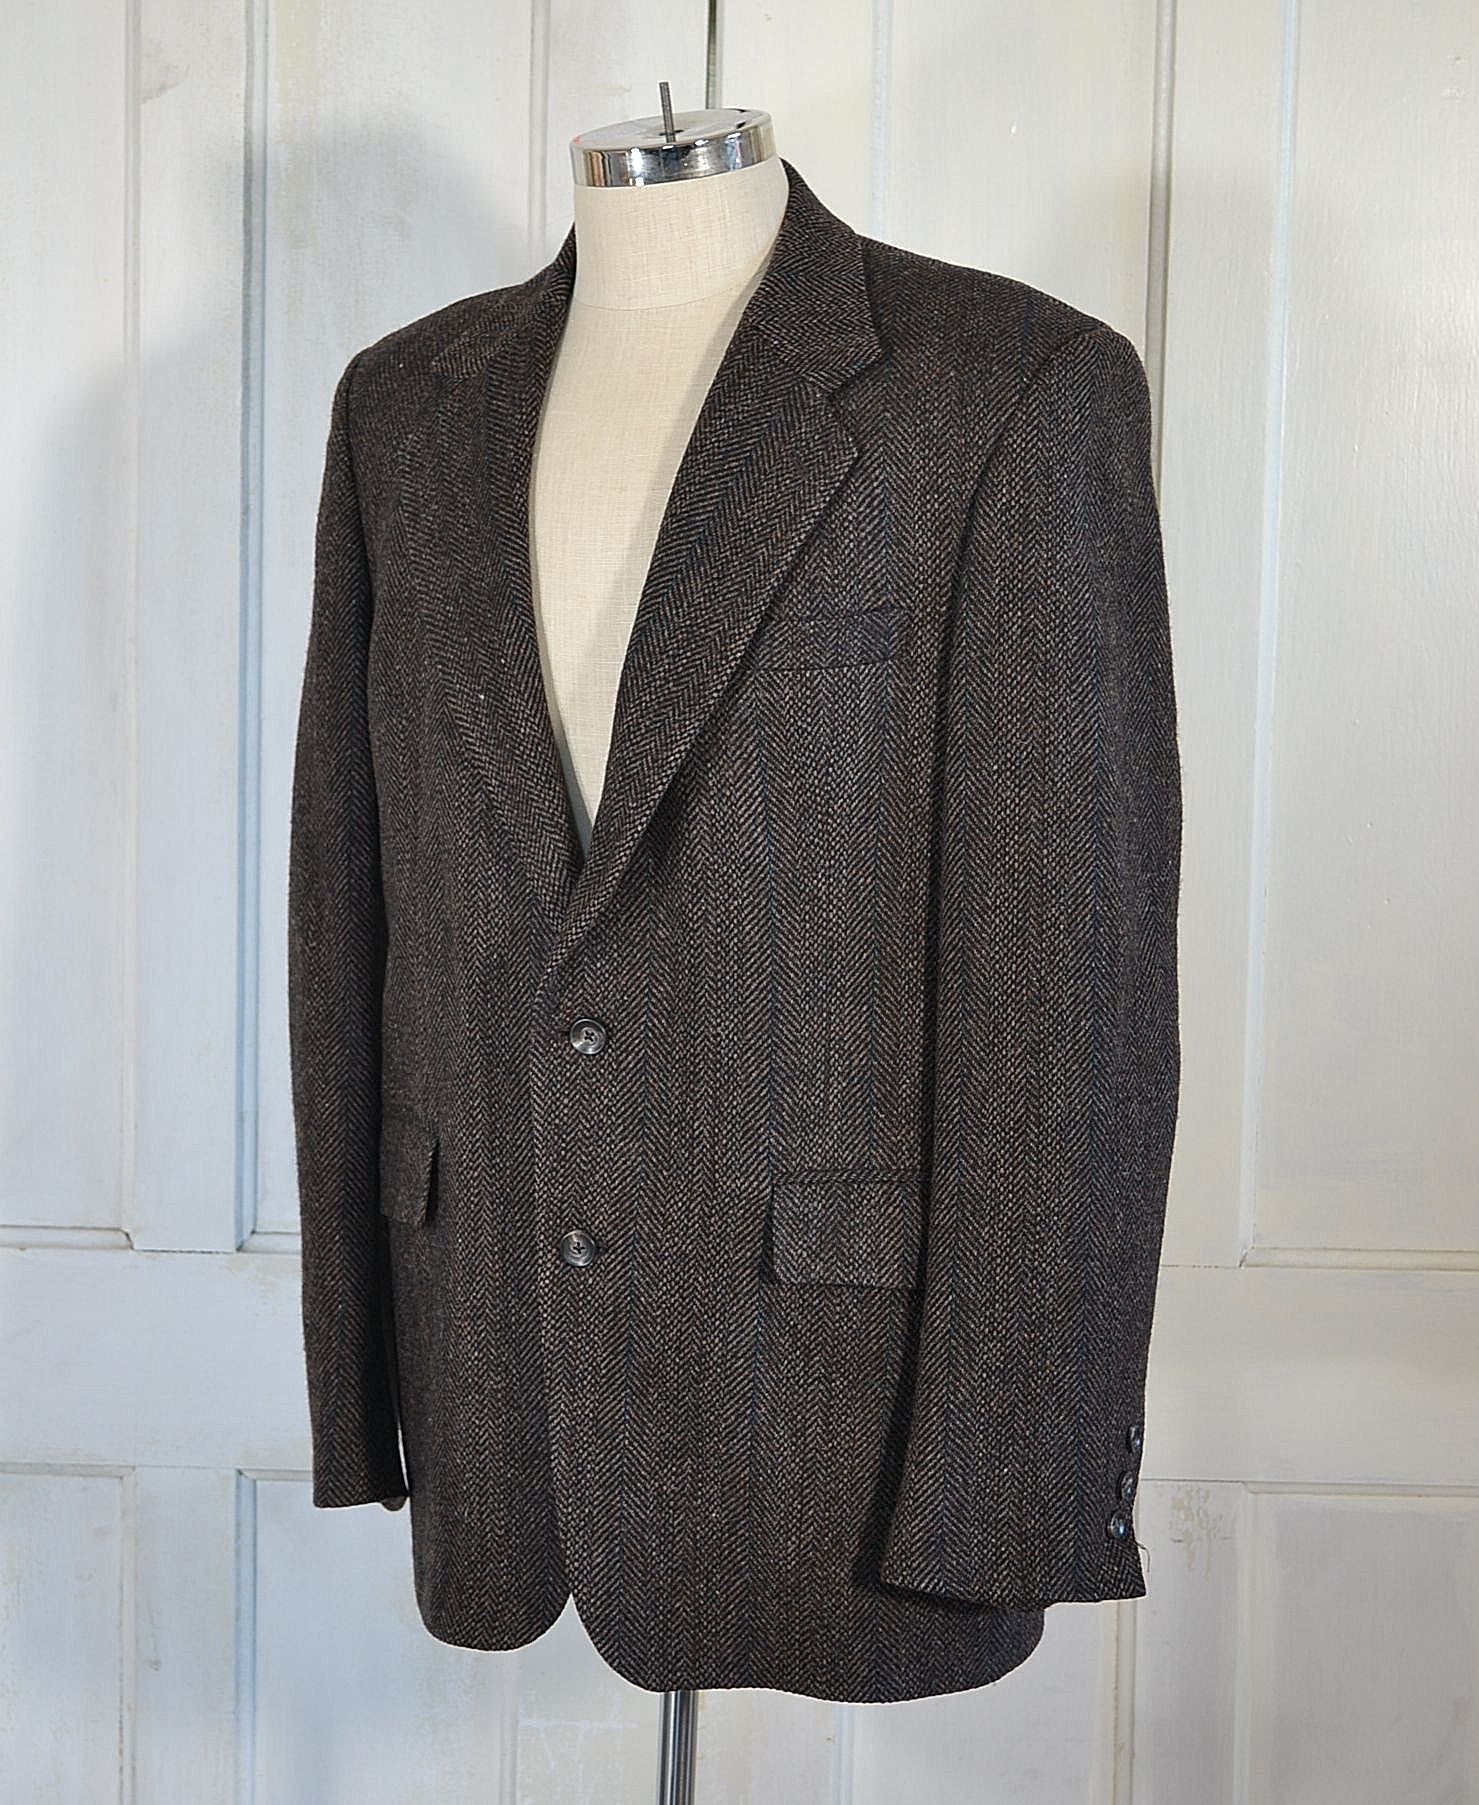 Vintage Harris Tweed Blazer Herringbone Tweed Sport Coat | Etsy